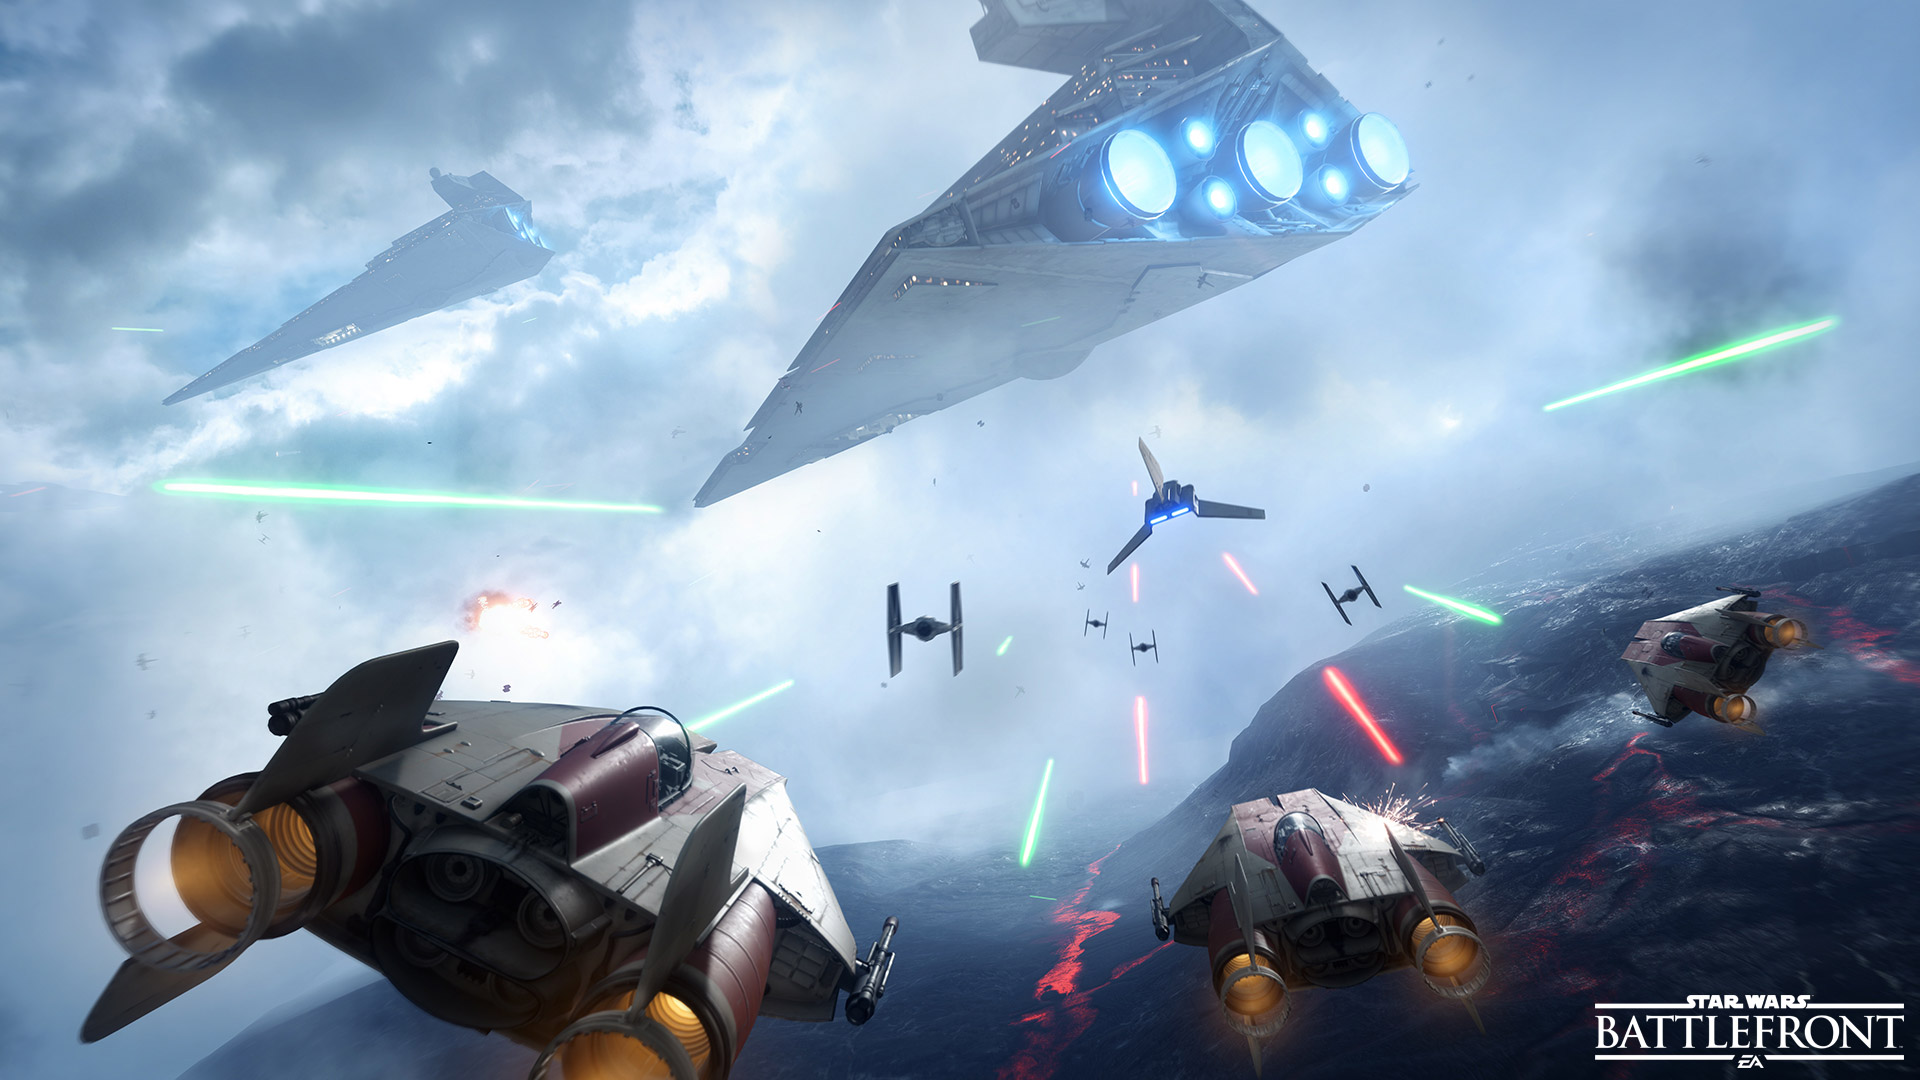 Si eres miembro de EA Access puedes disfrutar del nuevo Star Wars Battlefront durante 10 horas.